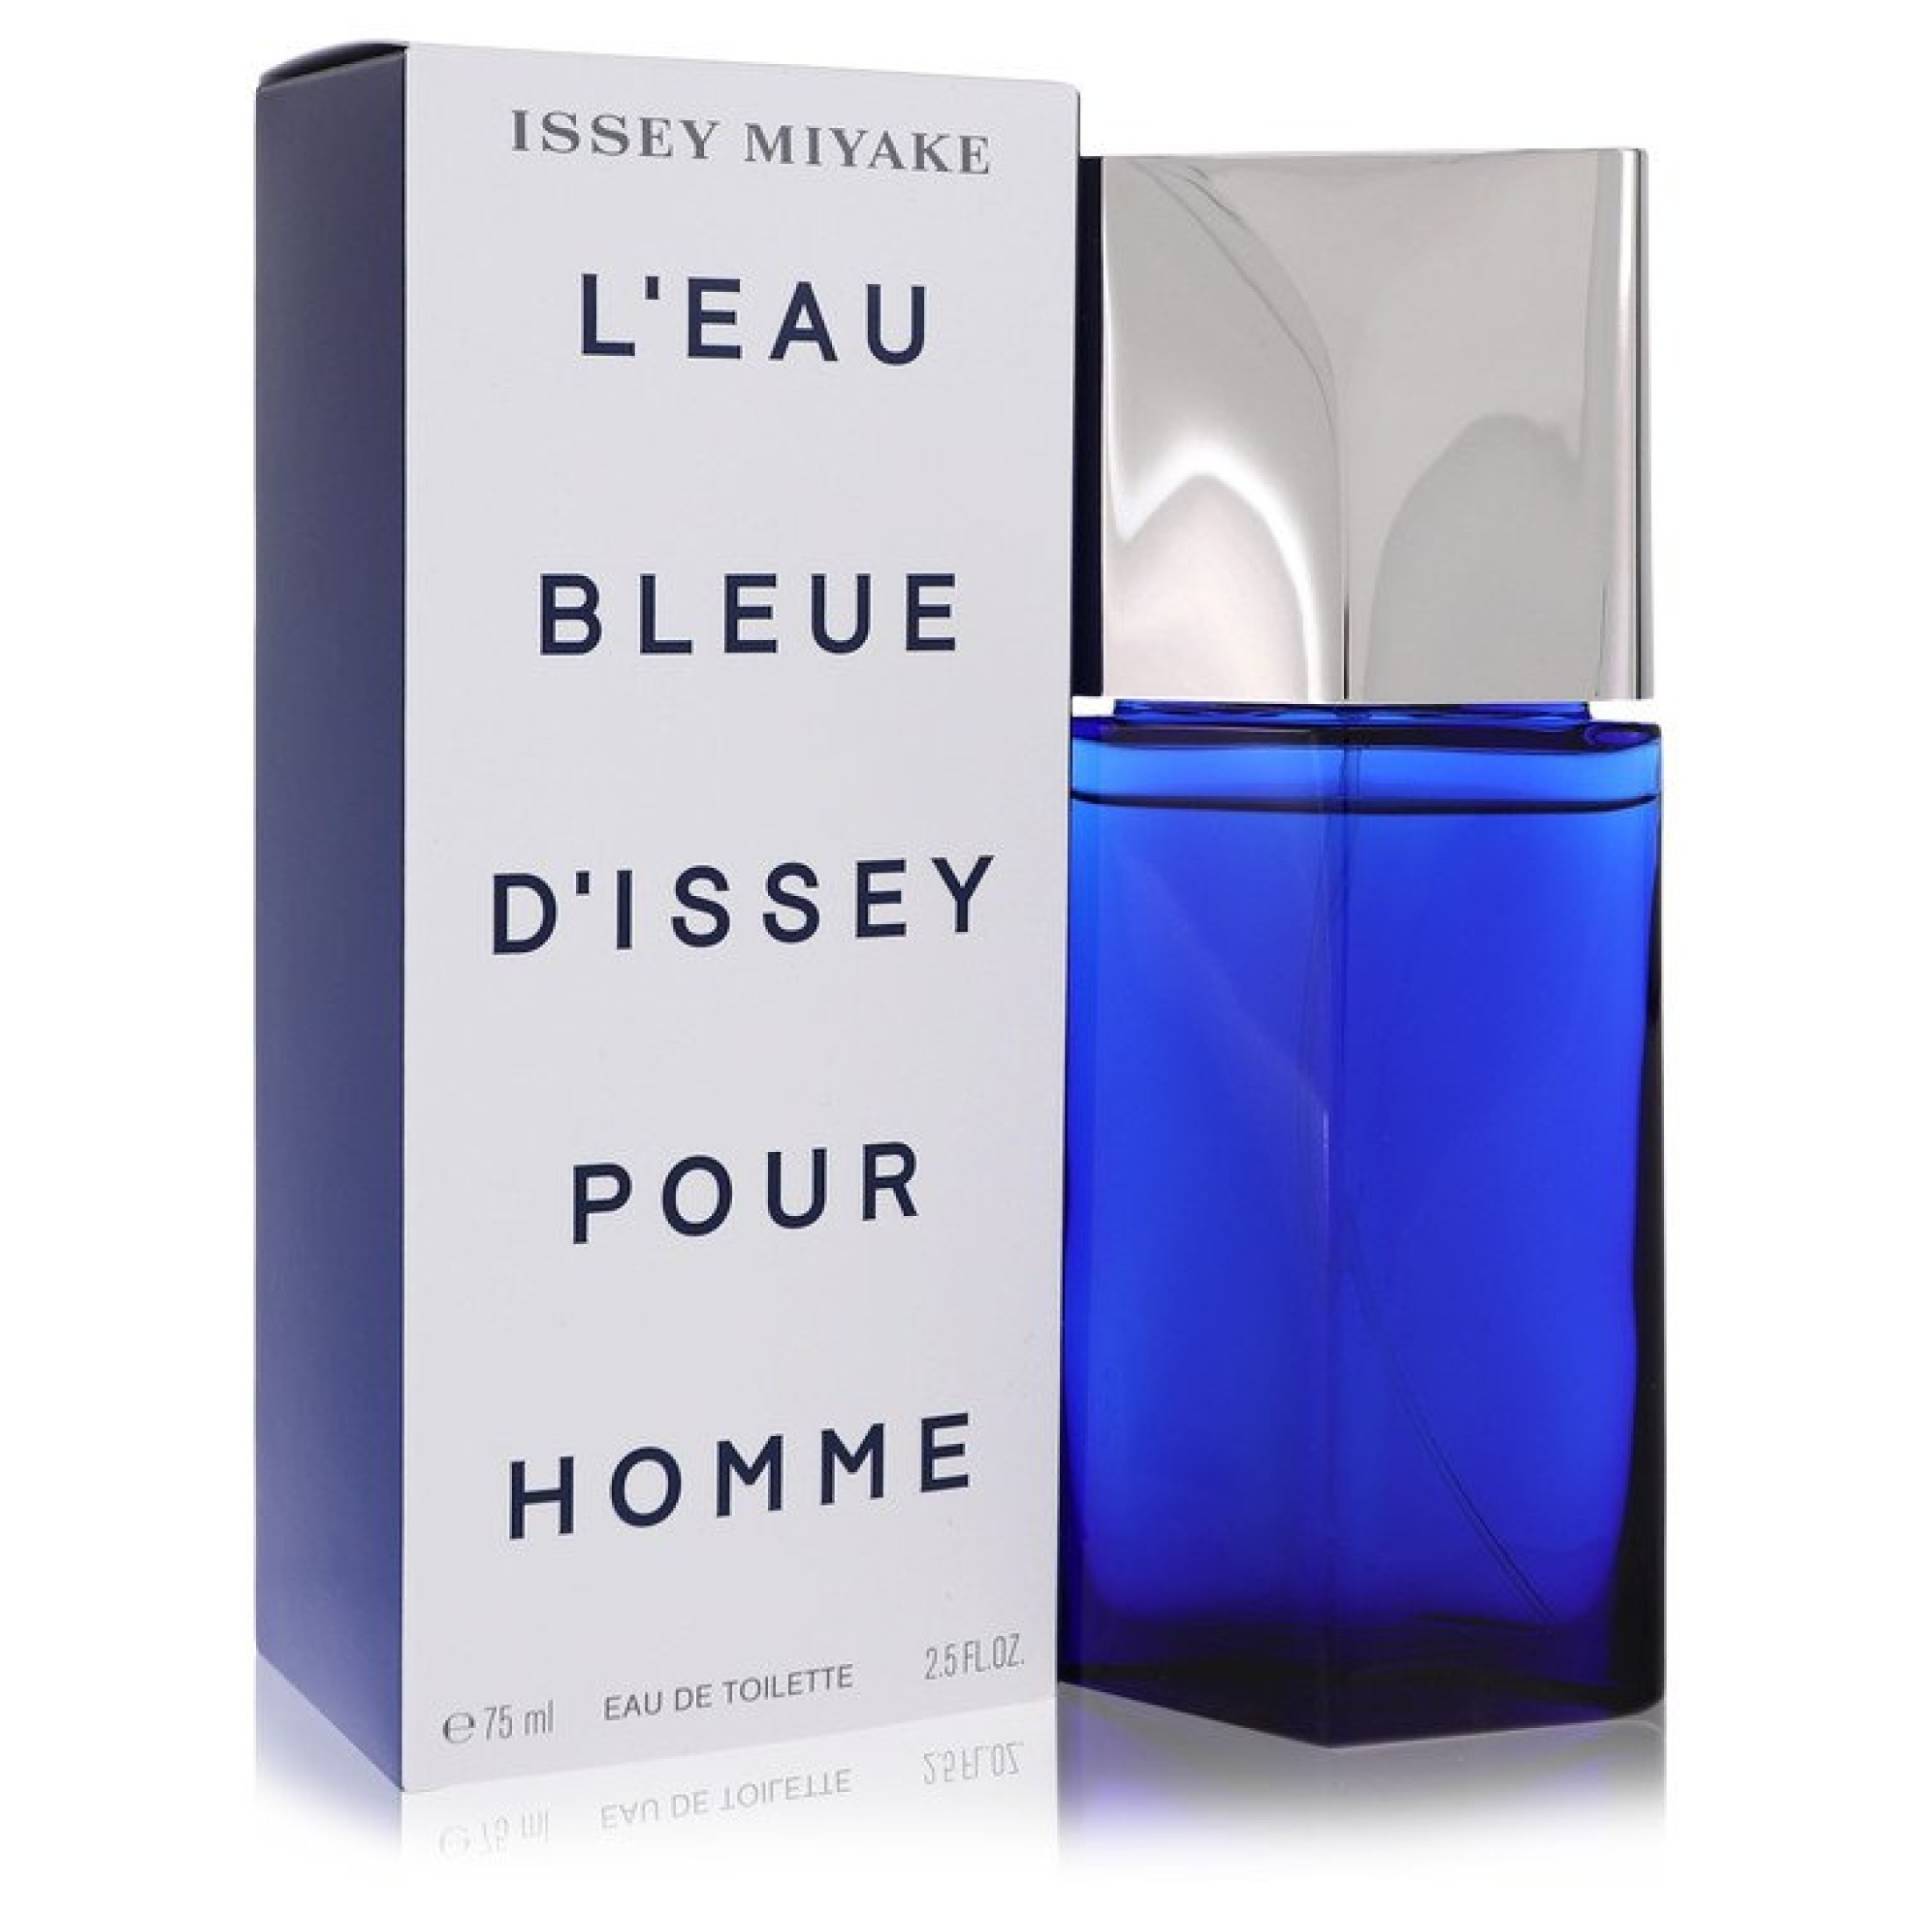 Issey Miyake L'EAU BLEUE D'ISSEY POUR HOMME Eau De Toilette Spray 75 ml von Issey Miyake